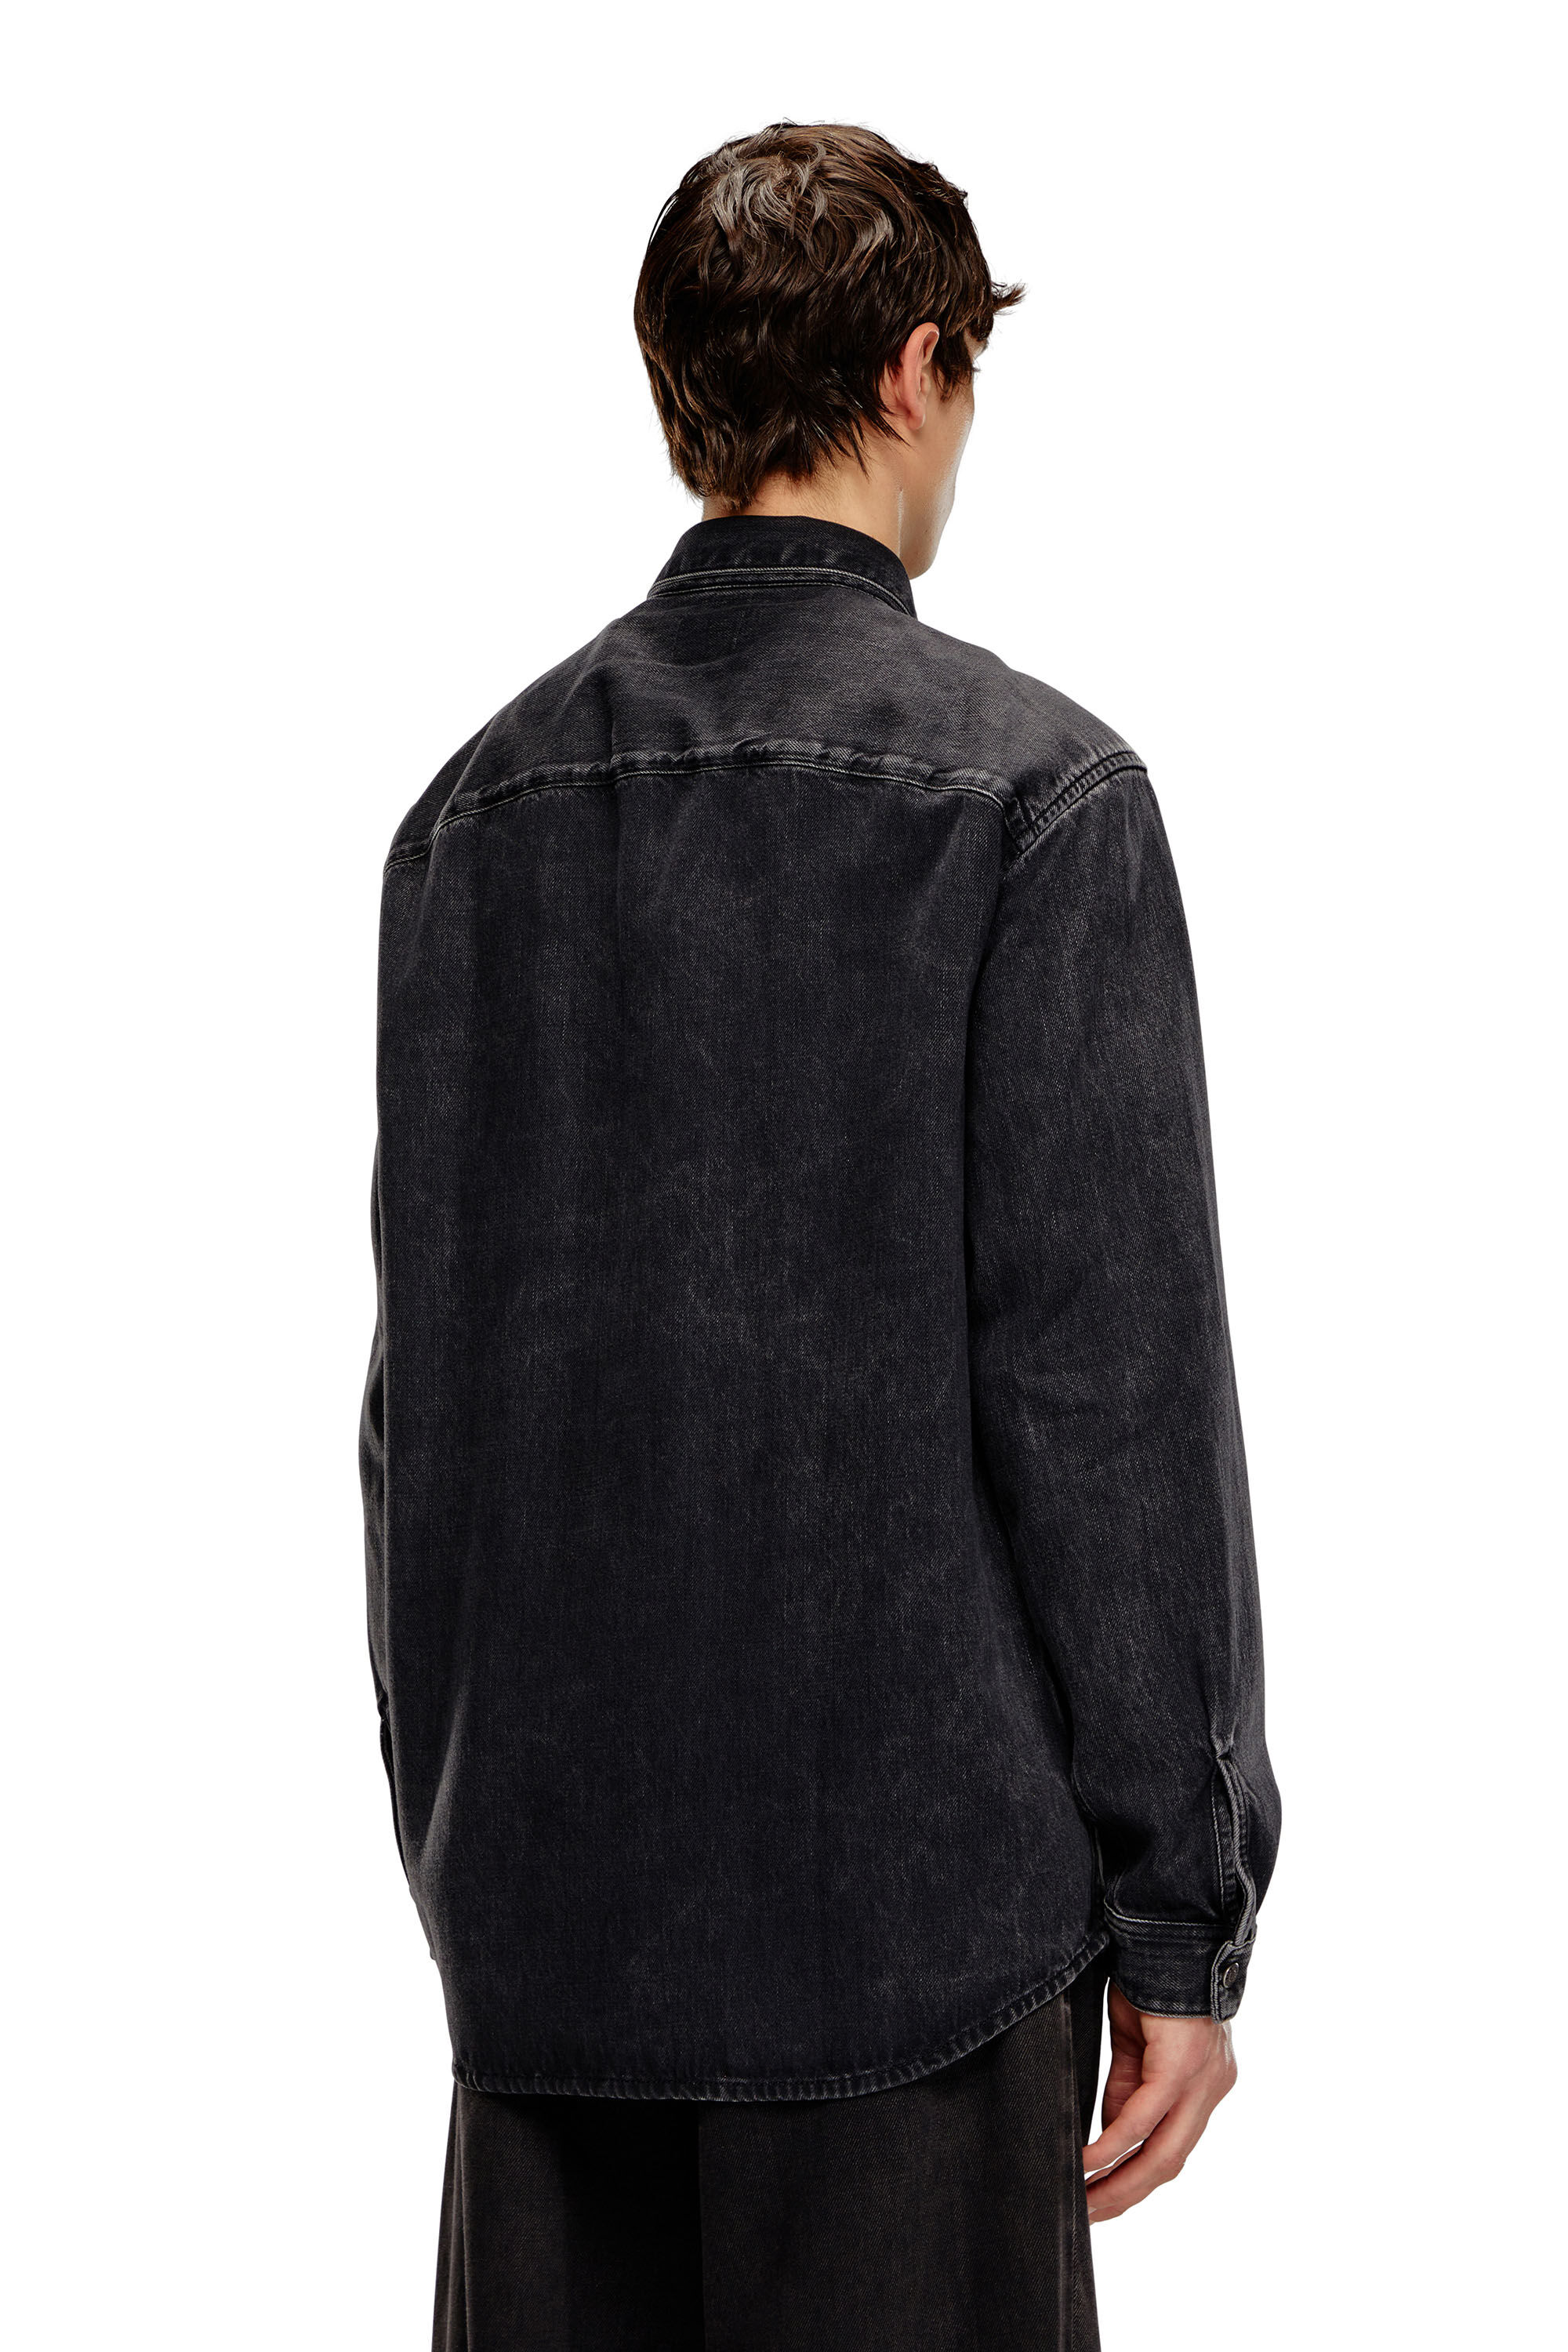 Diesel - D-SIMPLY, Man Shirt in Tencel denim in Black - Image 4